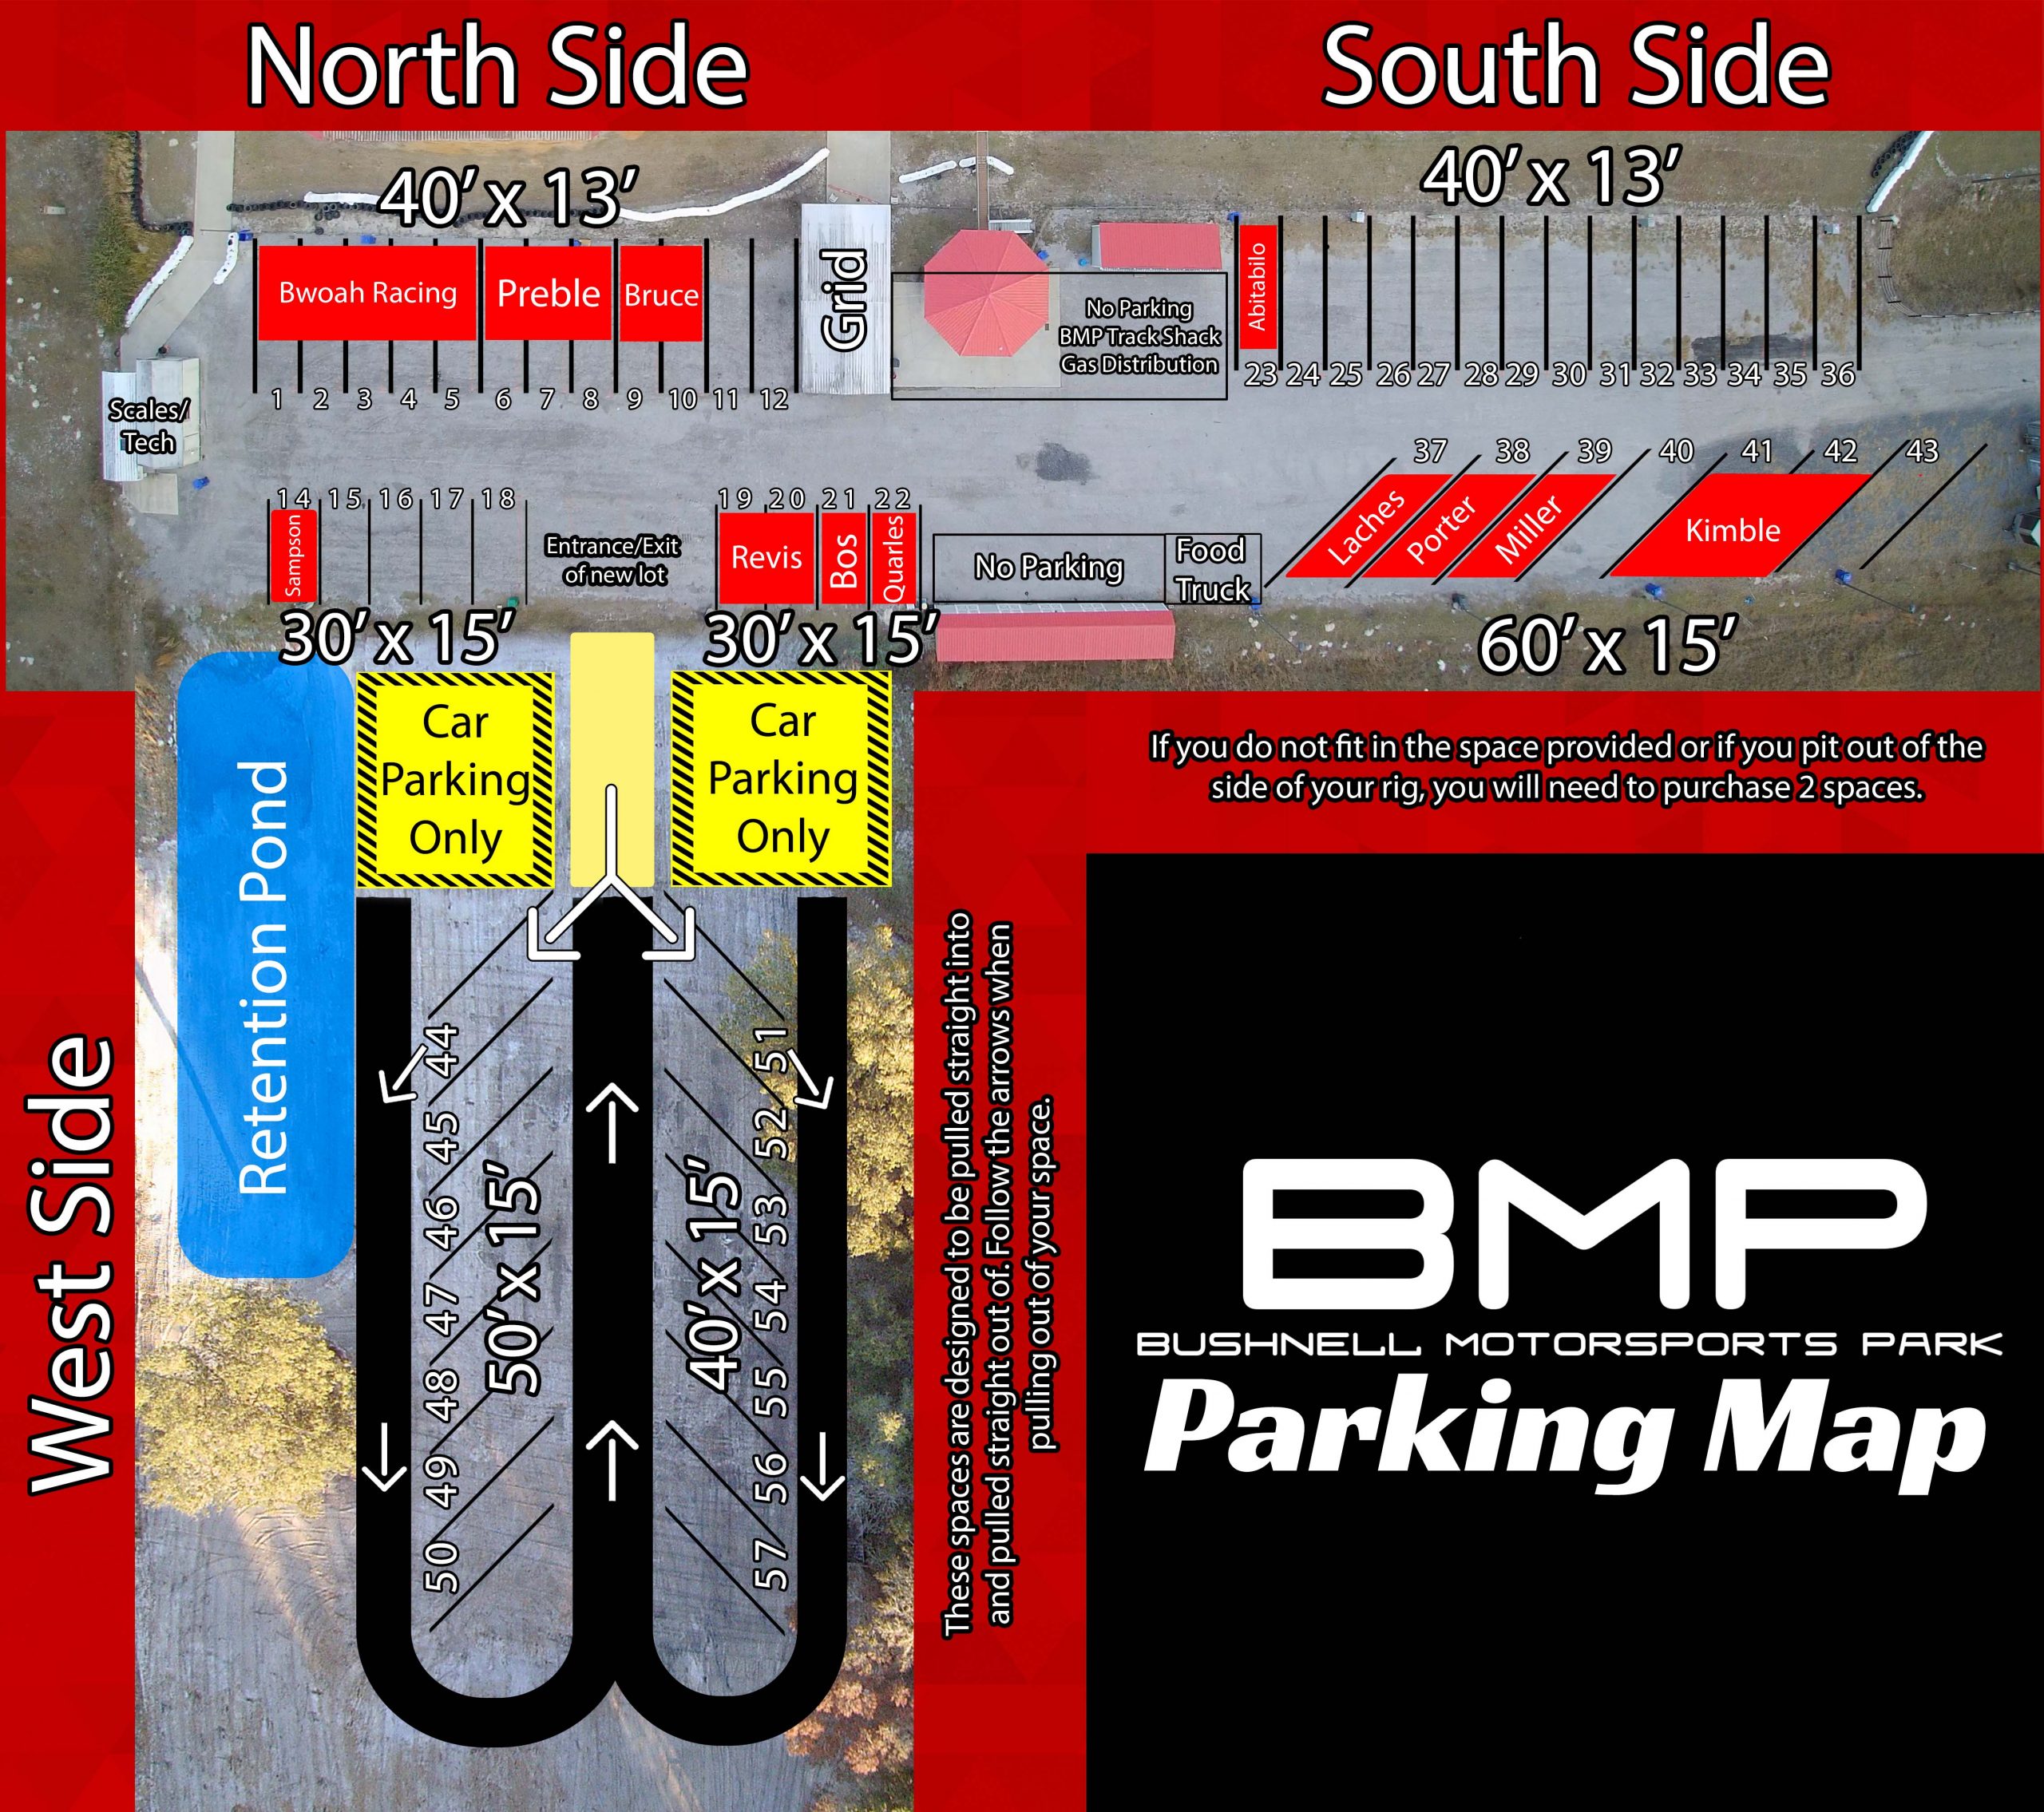 BMP Parking